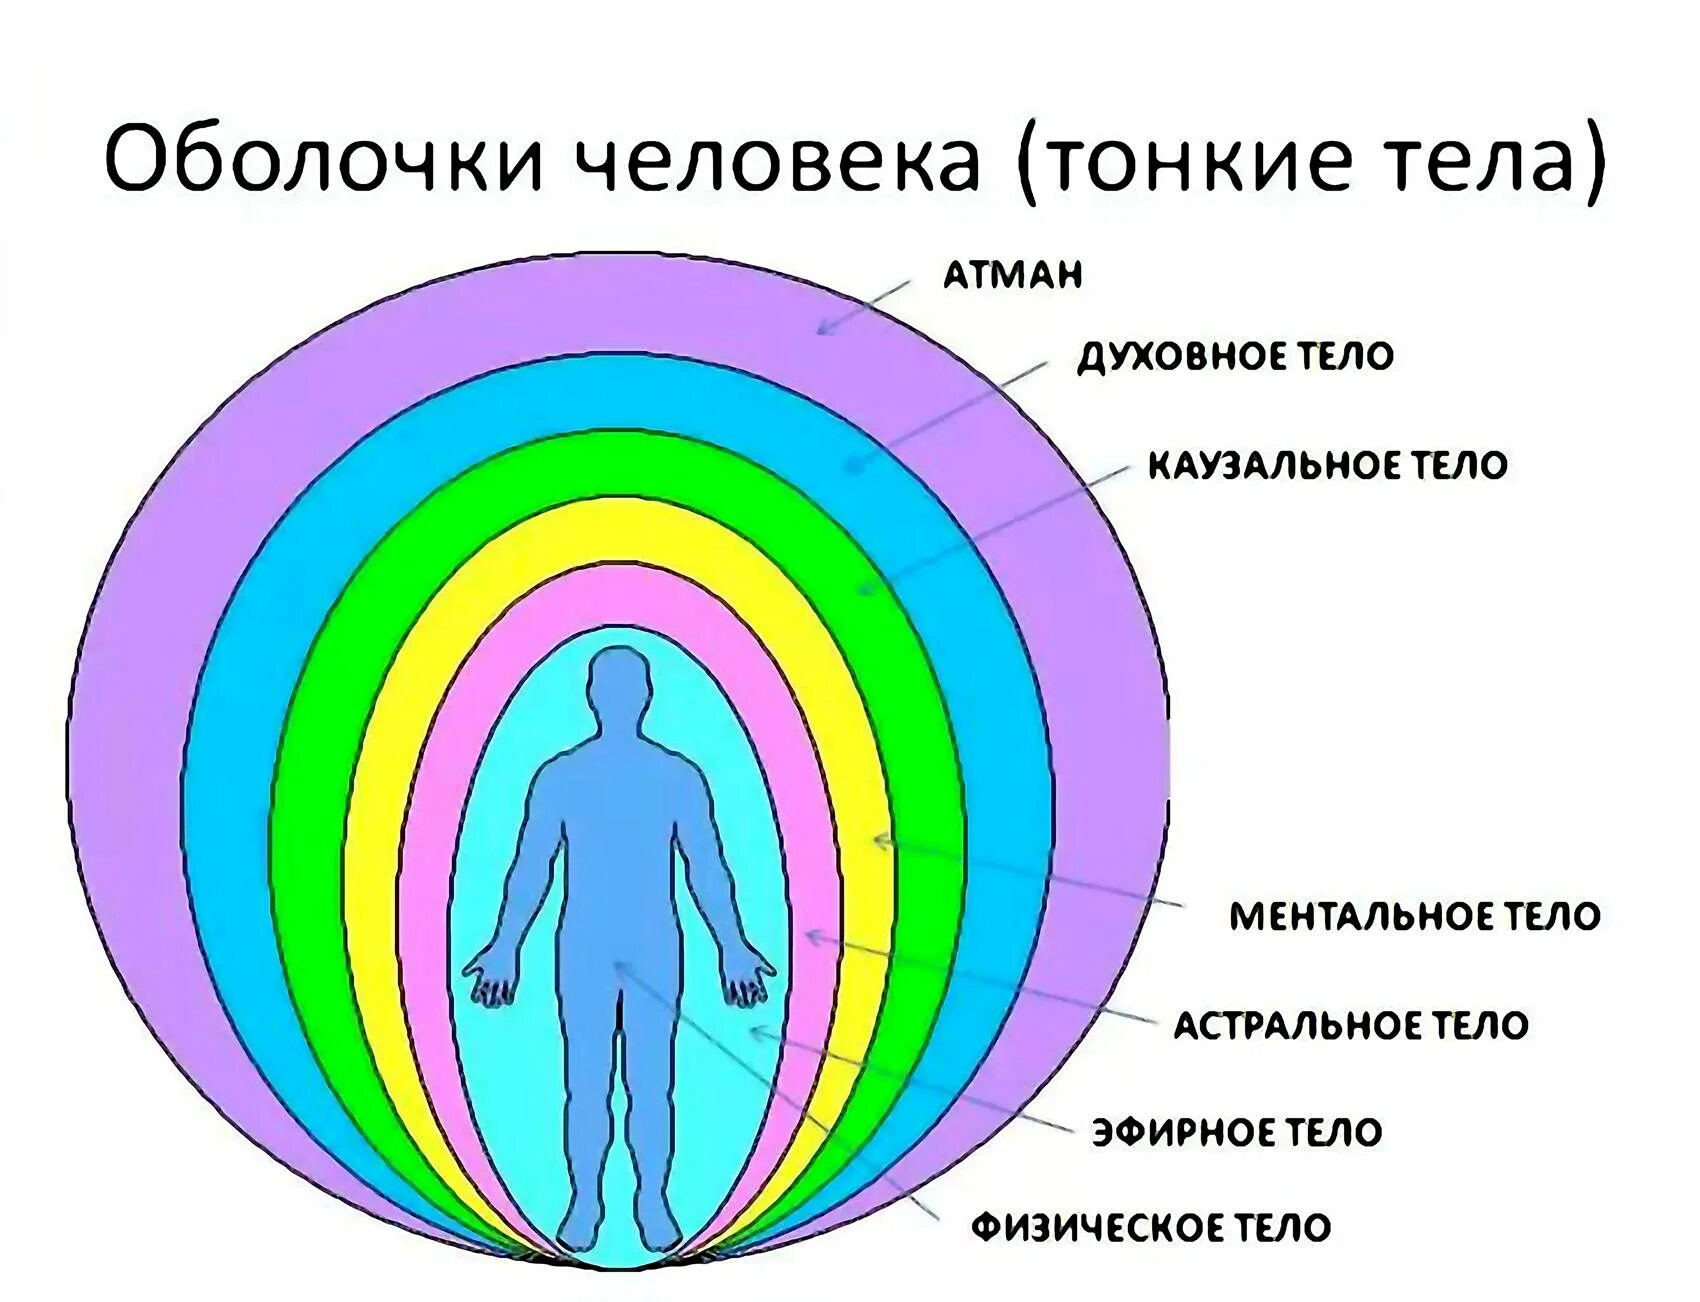 Духовное свойство. Аура энергетические тела человека. Структура тонких тел человека. Энергетическая оболочка человека. Схема тонких тел человека и их функции.